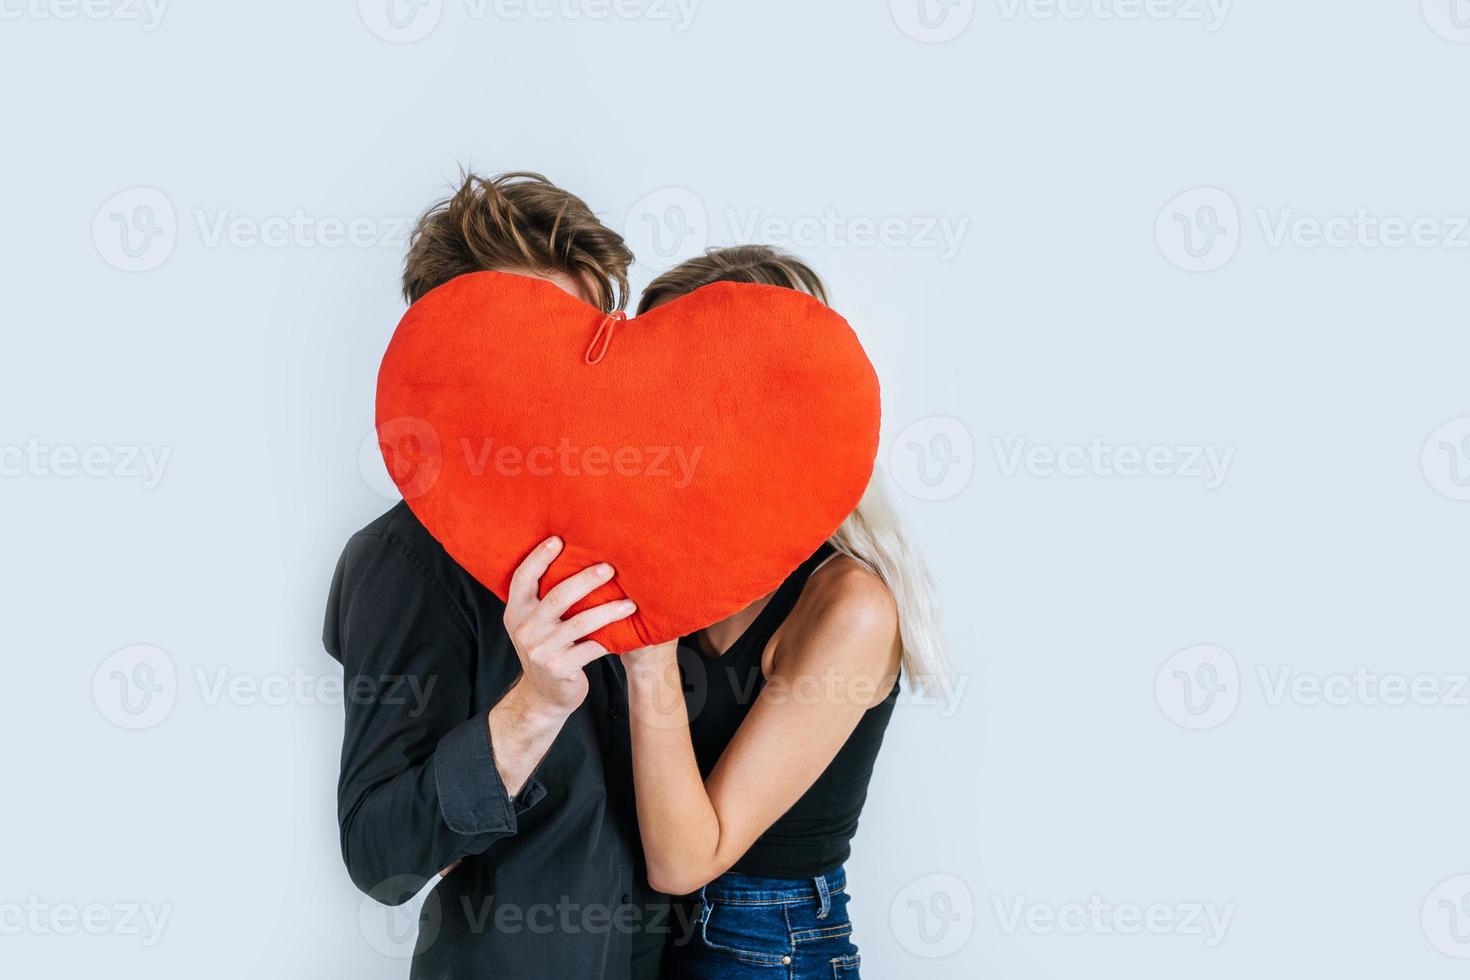 feliz pareja amorosa juntos sosteniendo un corazón rojo foto